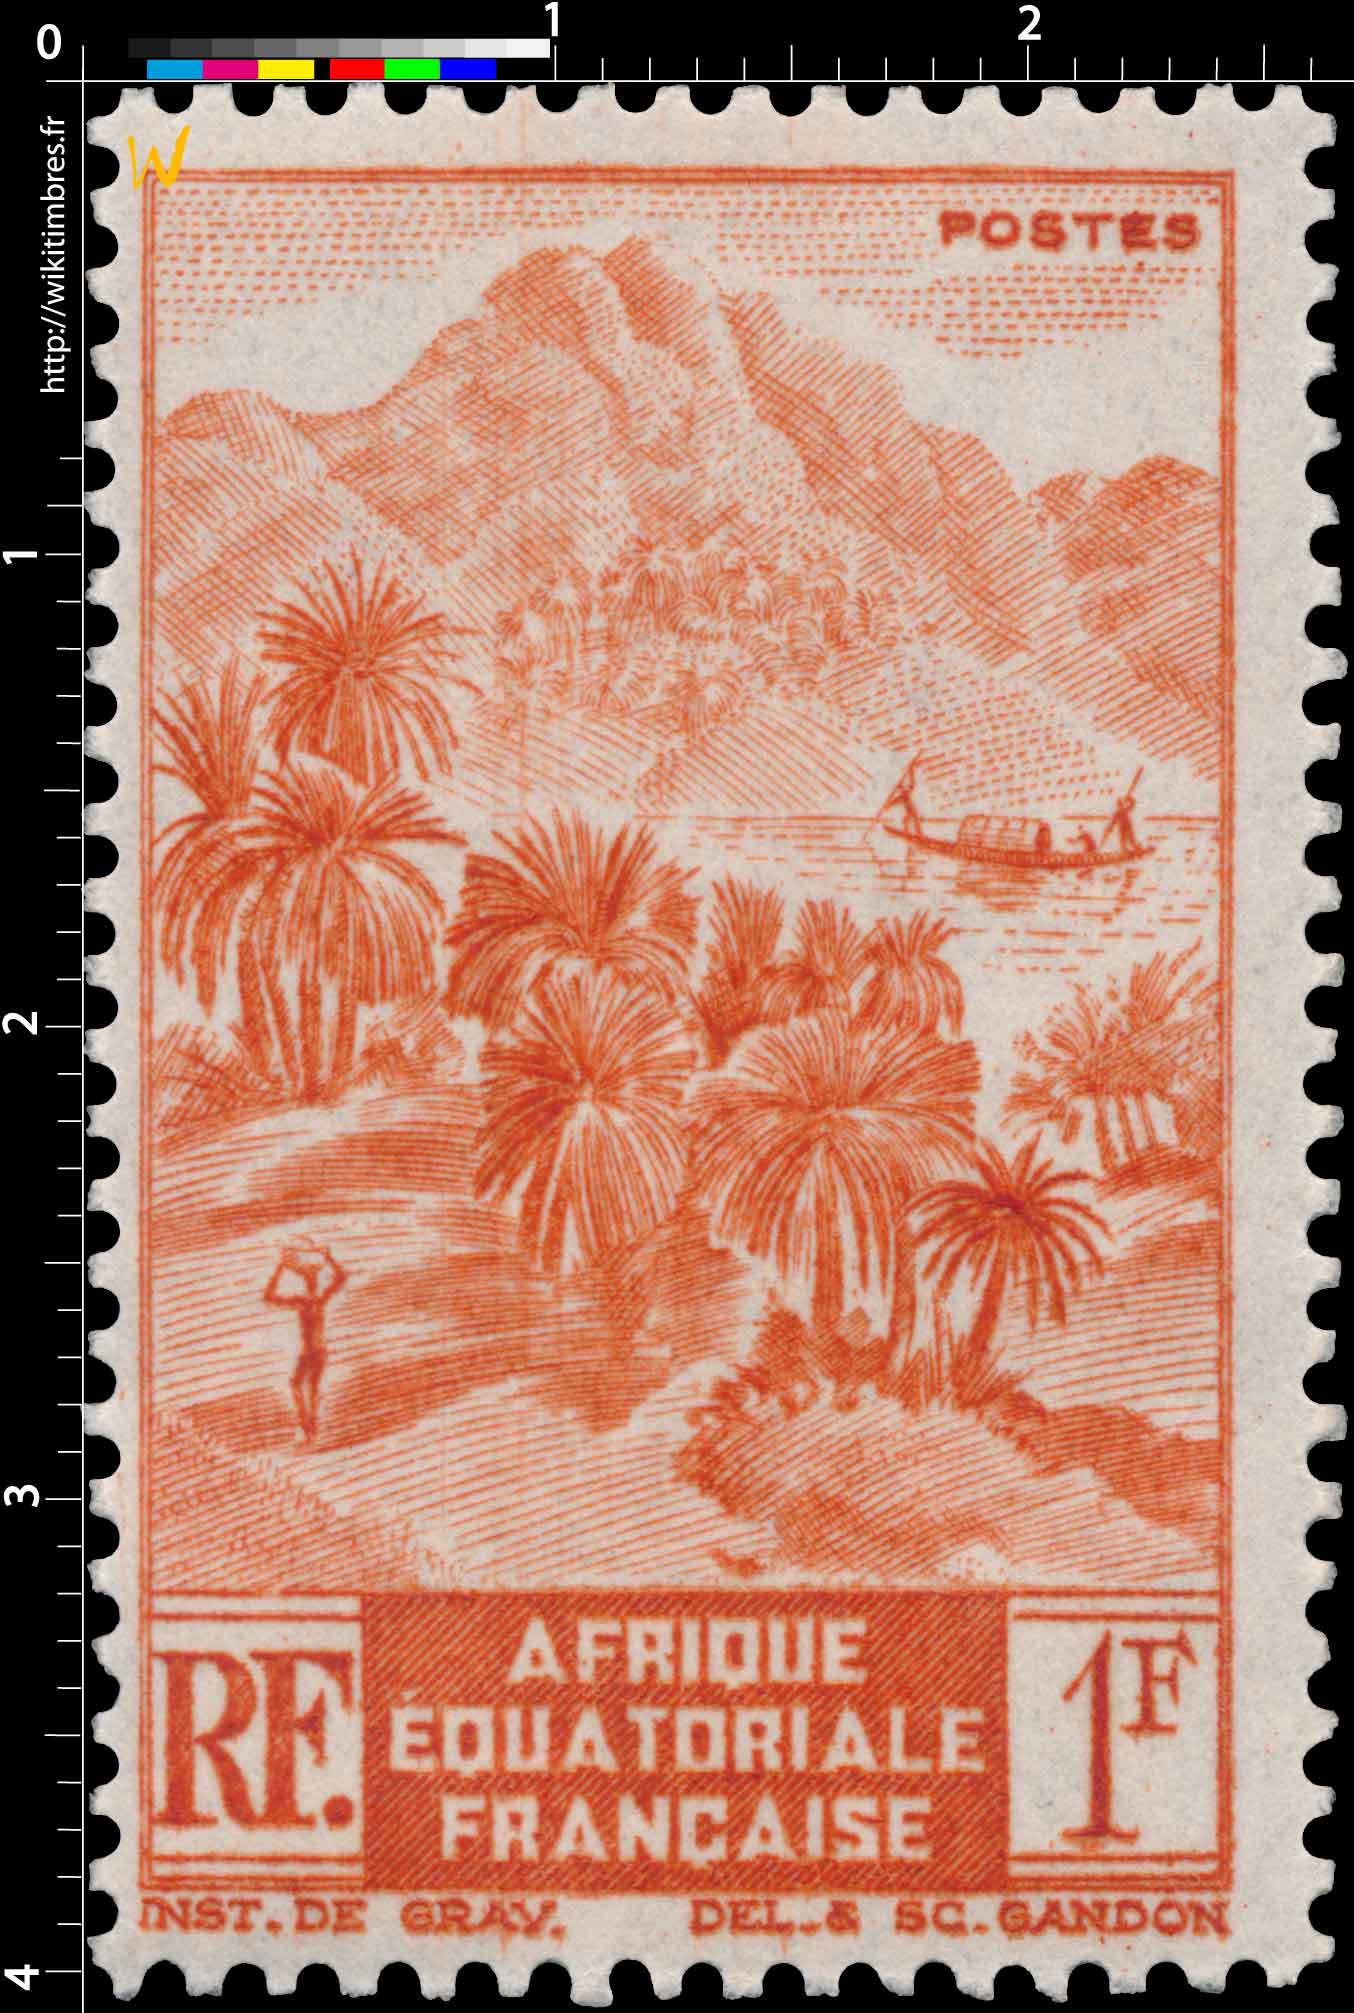 Afrique Équatoriale Française